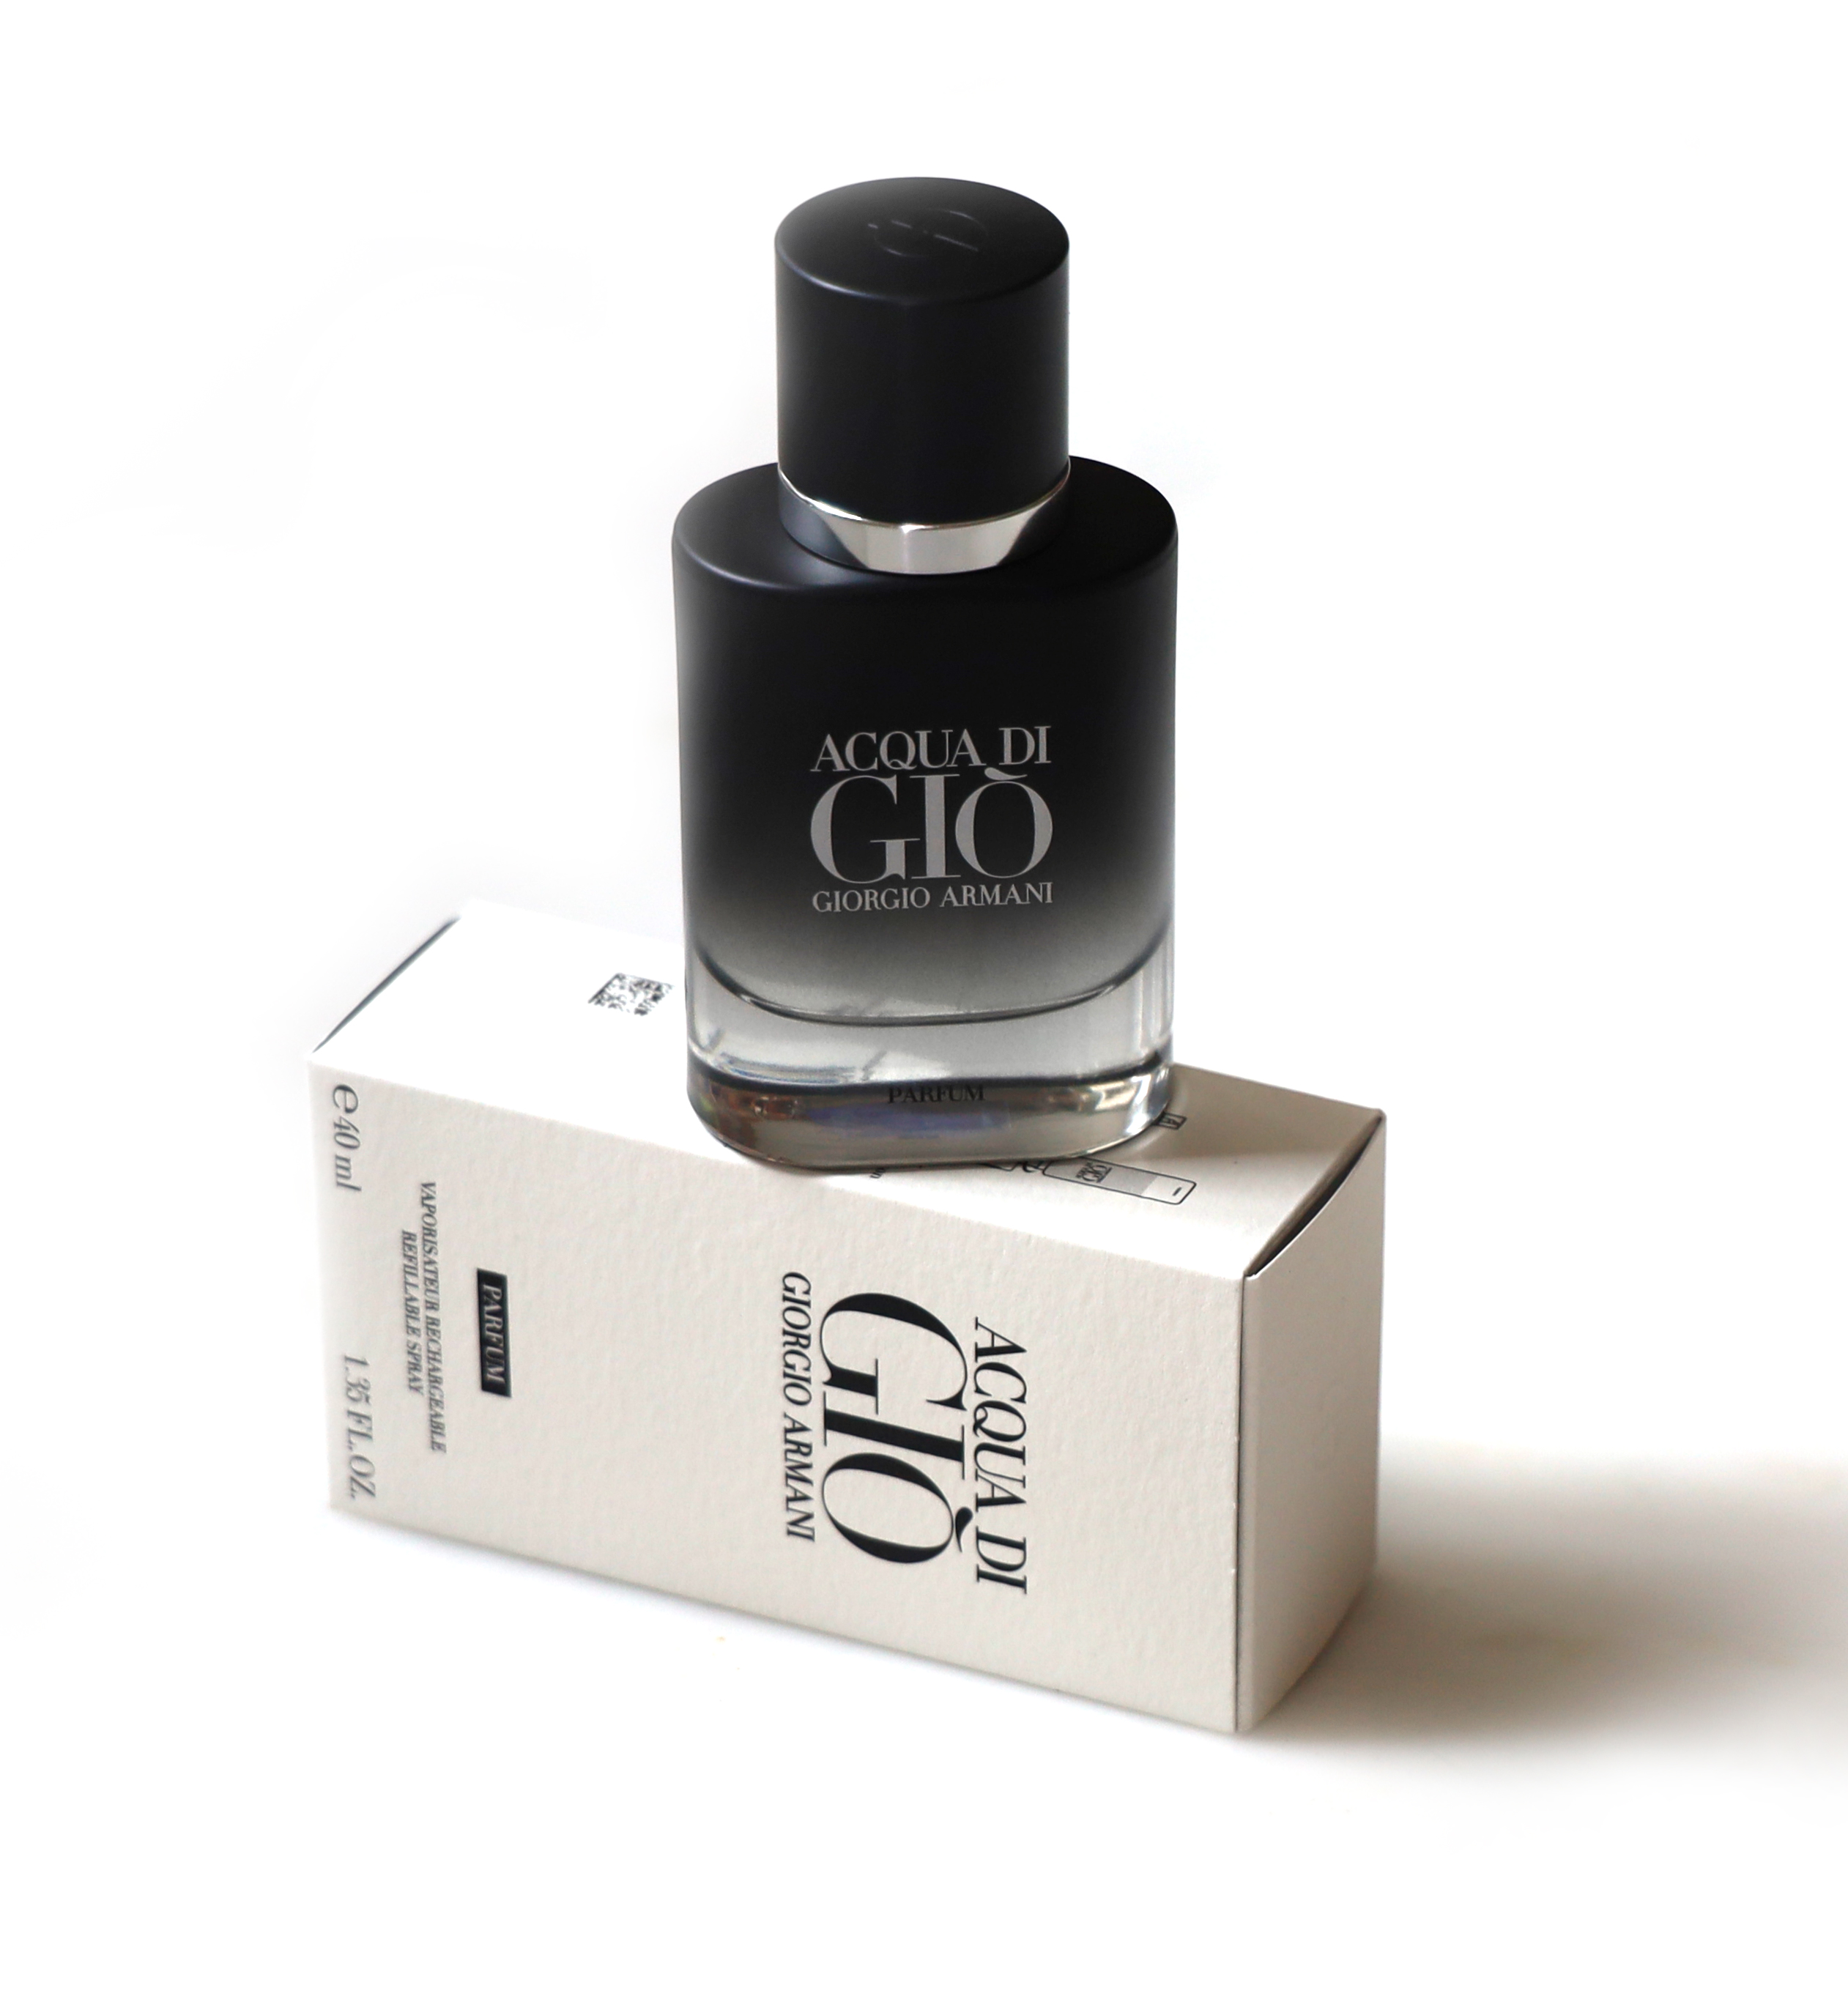 Acqua di Giò Parfum Giorgio Armani Review ~ Fragrance Reviews